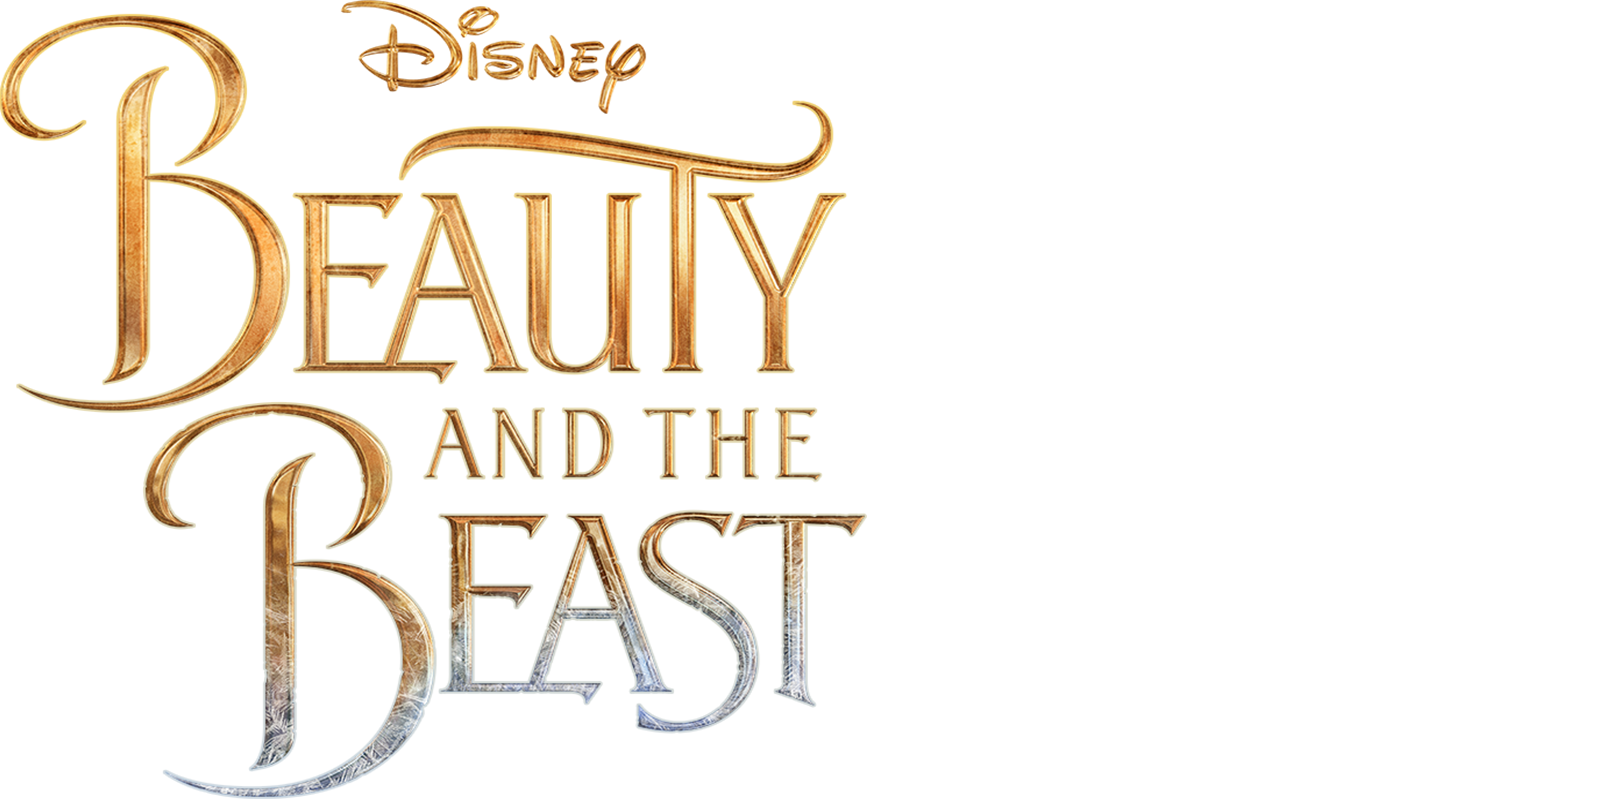 beauty and the beast 2017 full movie megavideo